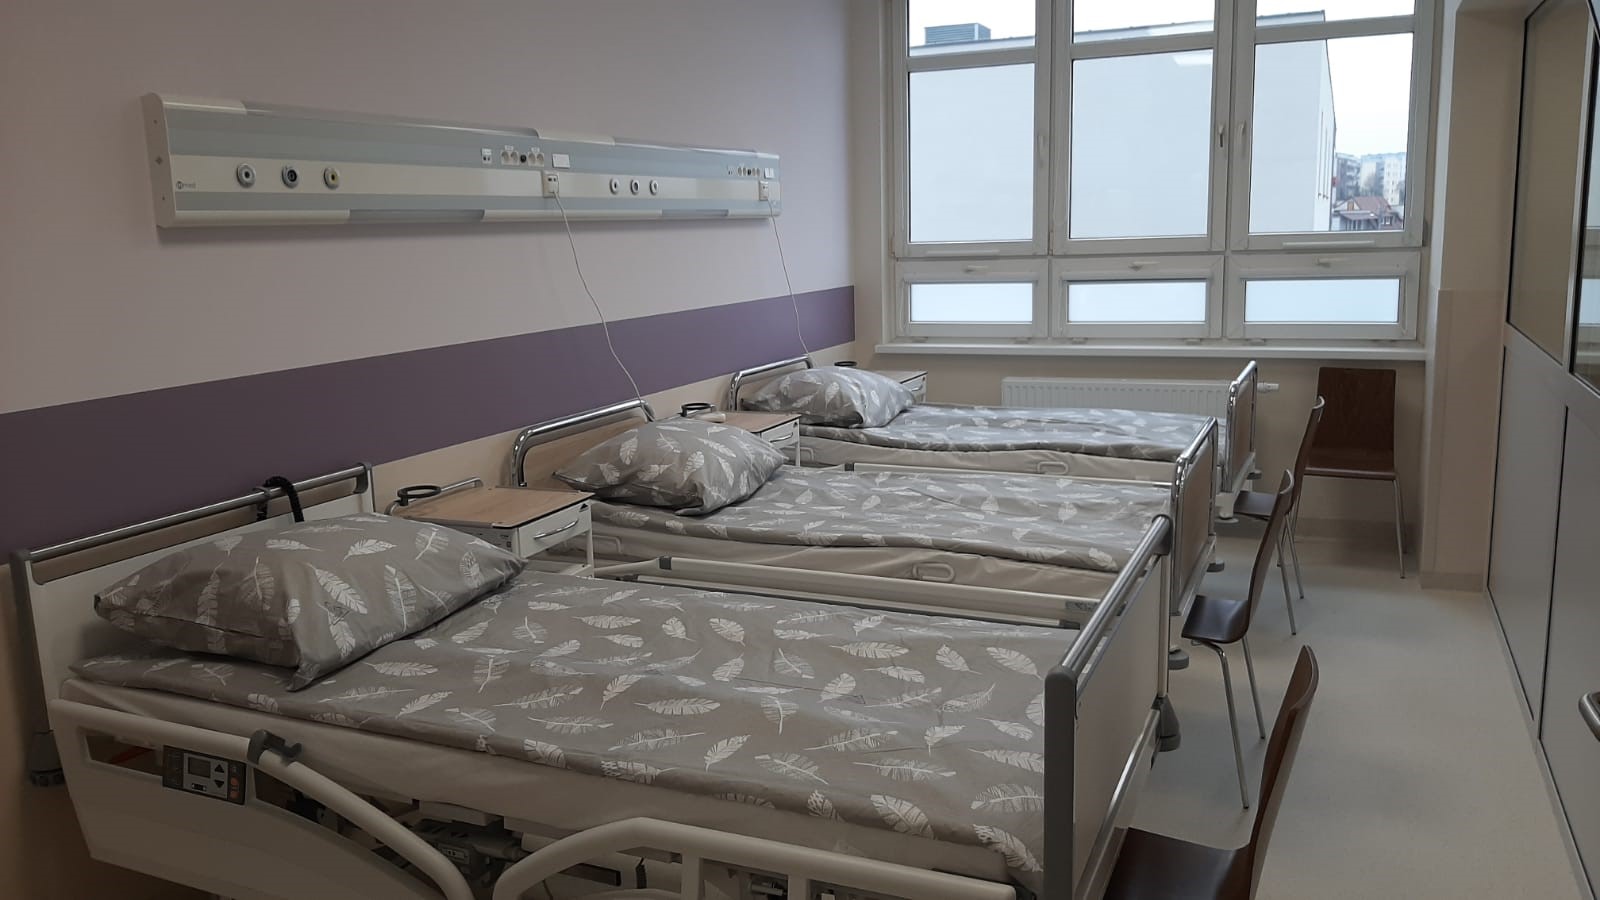 Interna w Kociewskim Centrum Zdrowia po remoncie. Co zmieniło się za ponad 4 mln zł?